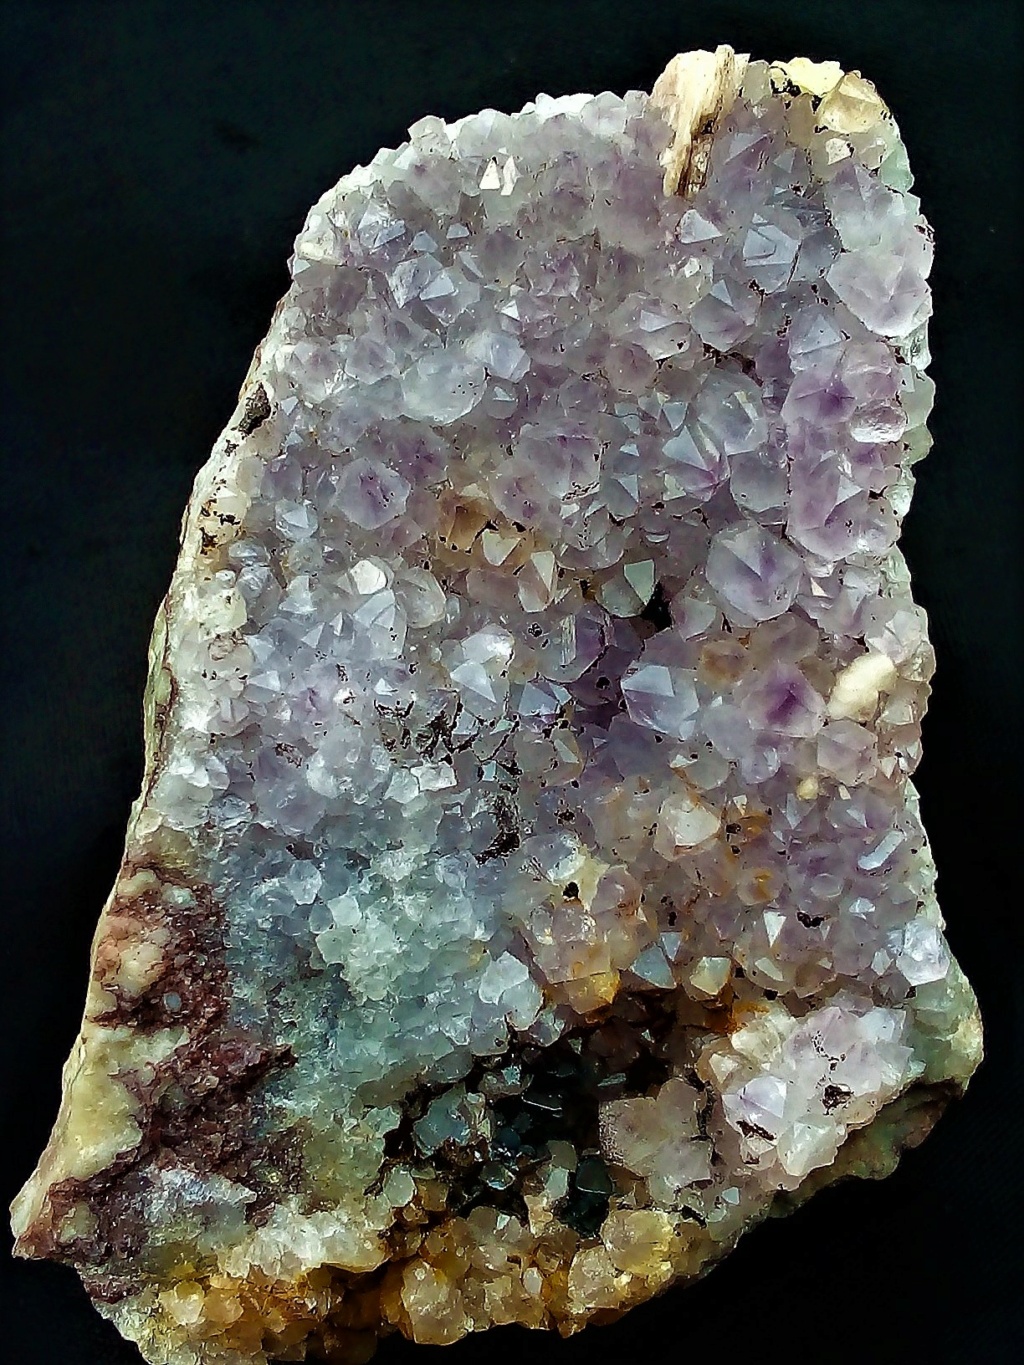 Minéraux de la mine CLARA autres que la Fluorite et la barite - Page 7 Img_1625